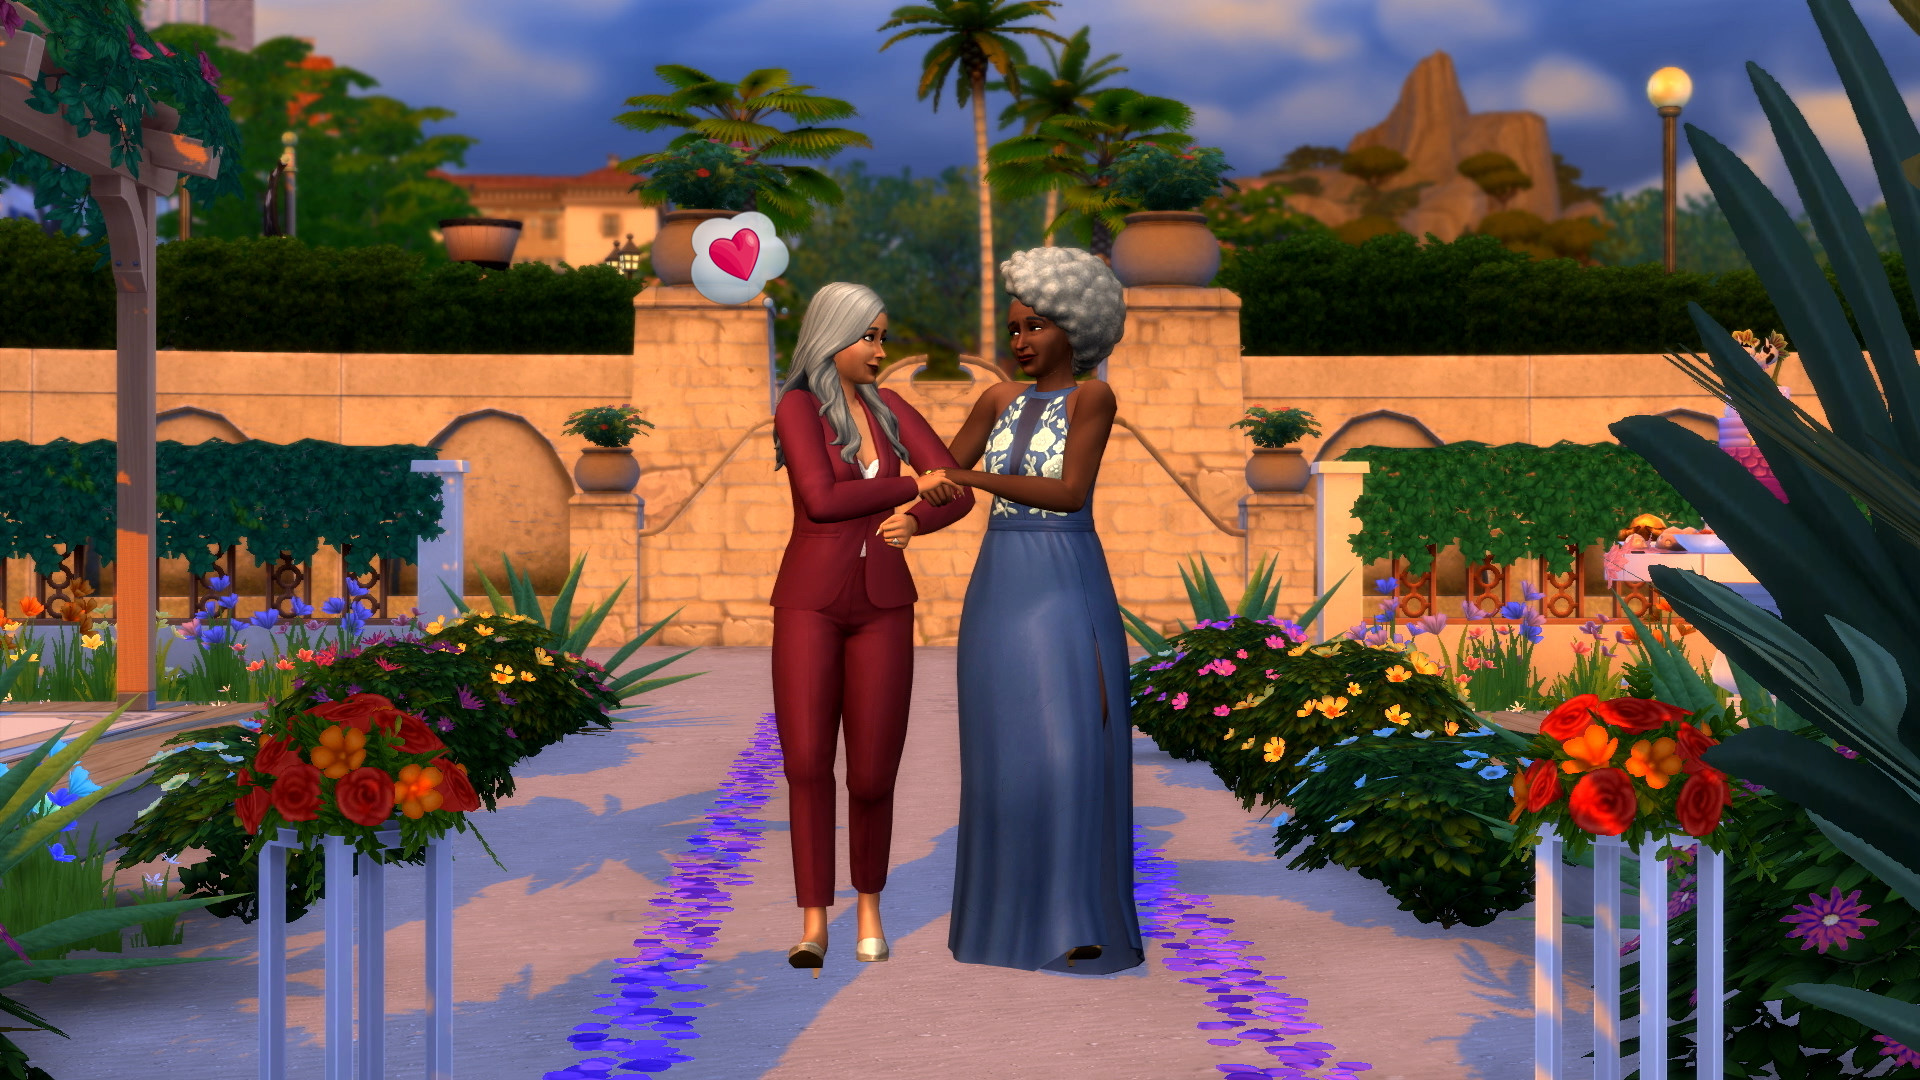 An изображение пары Sims, стоящей вместе на свадьбе